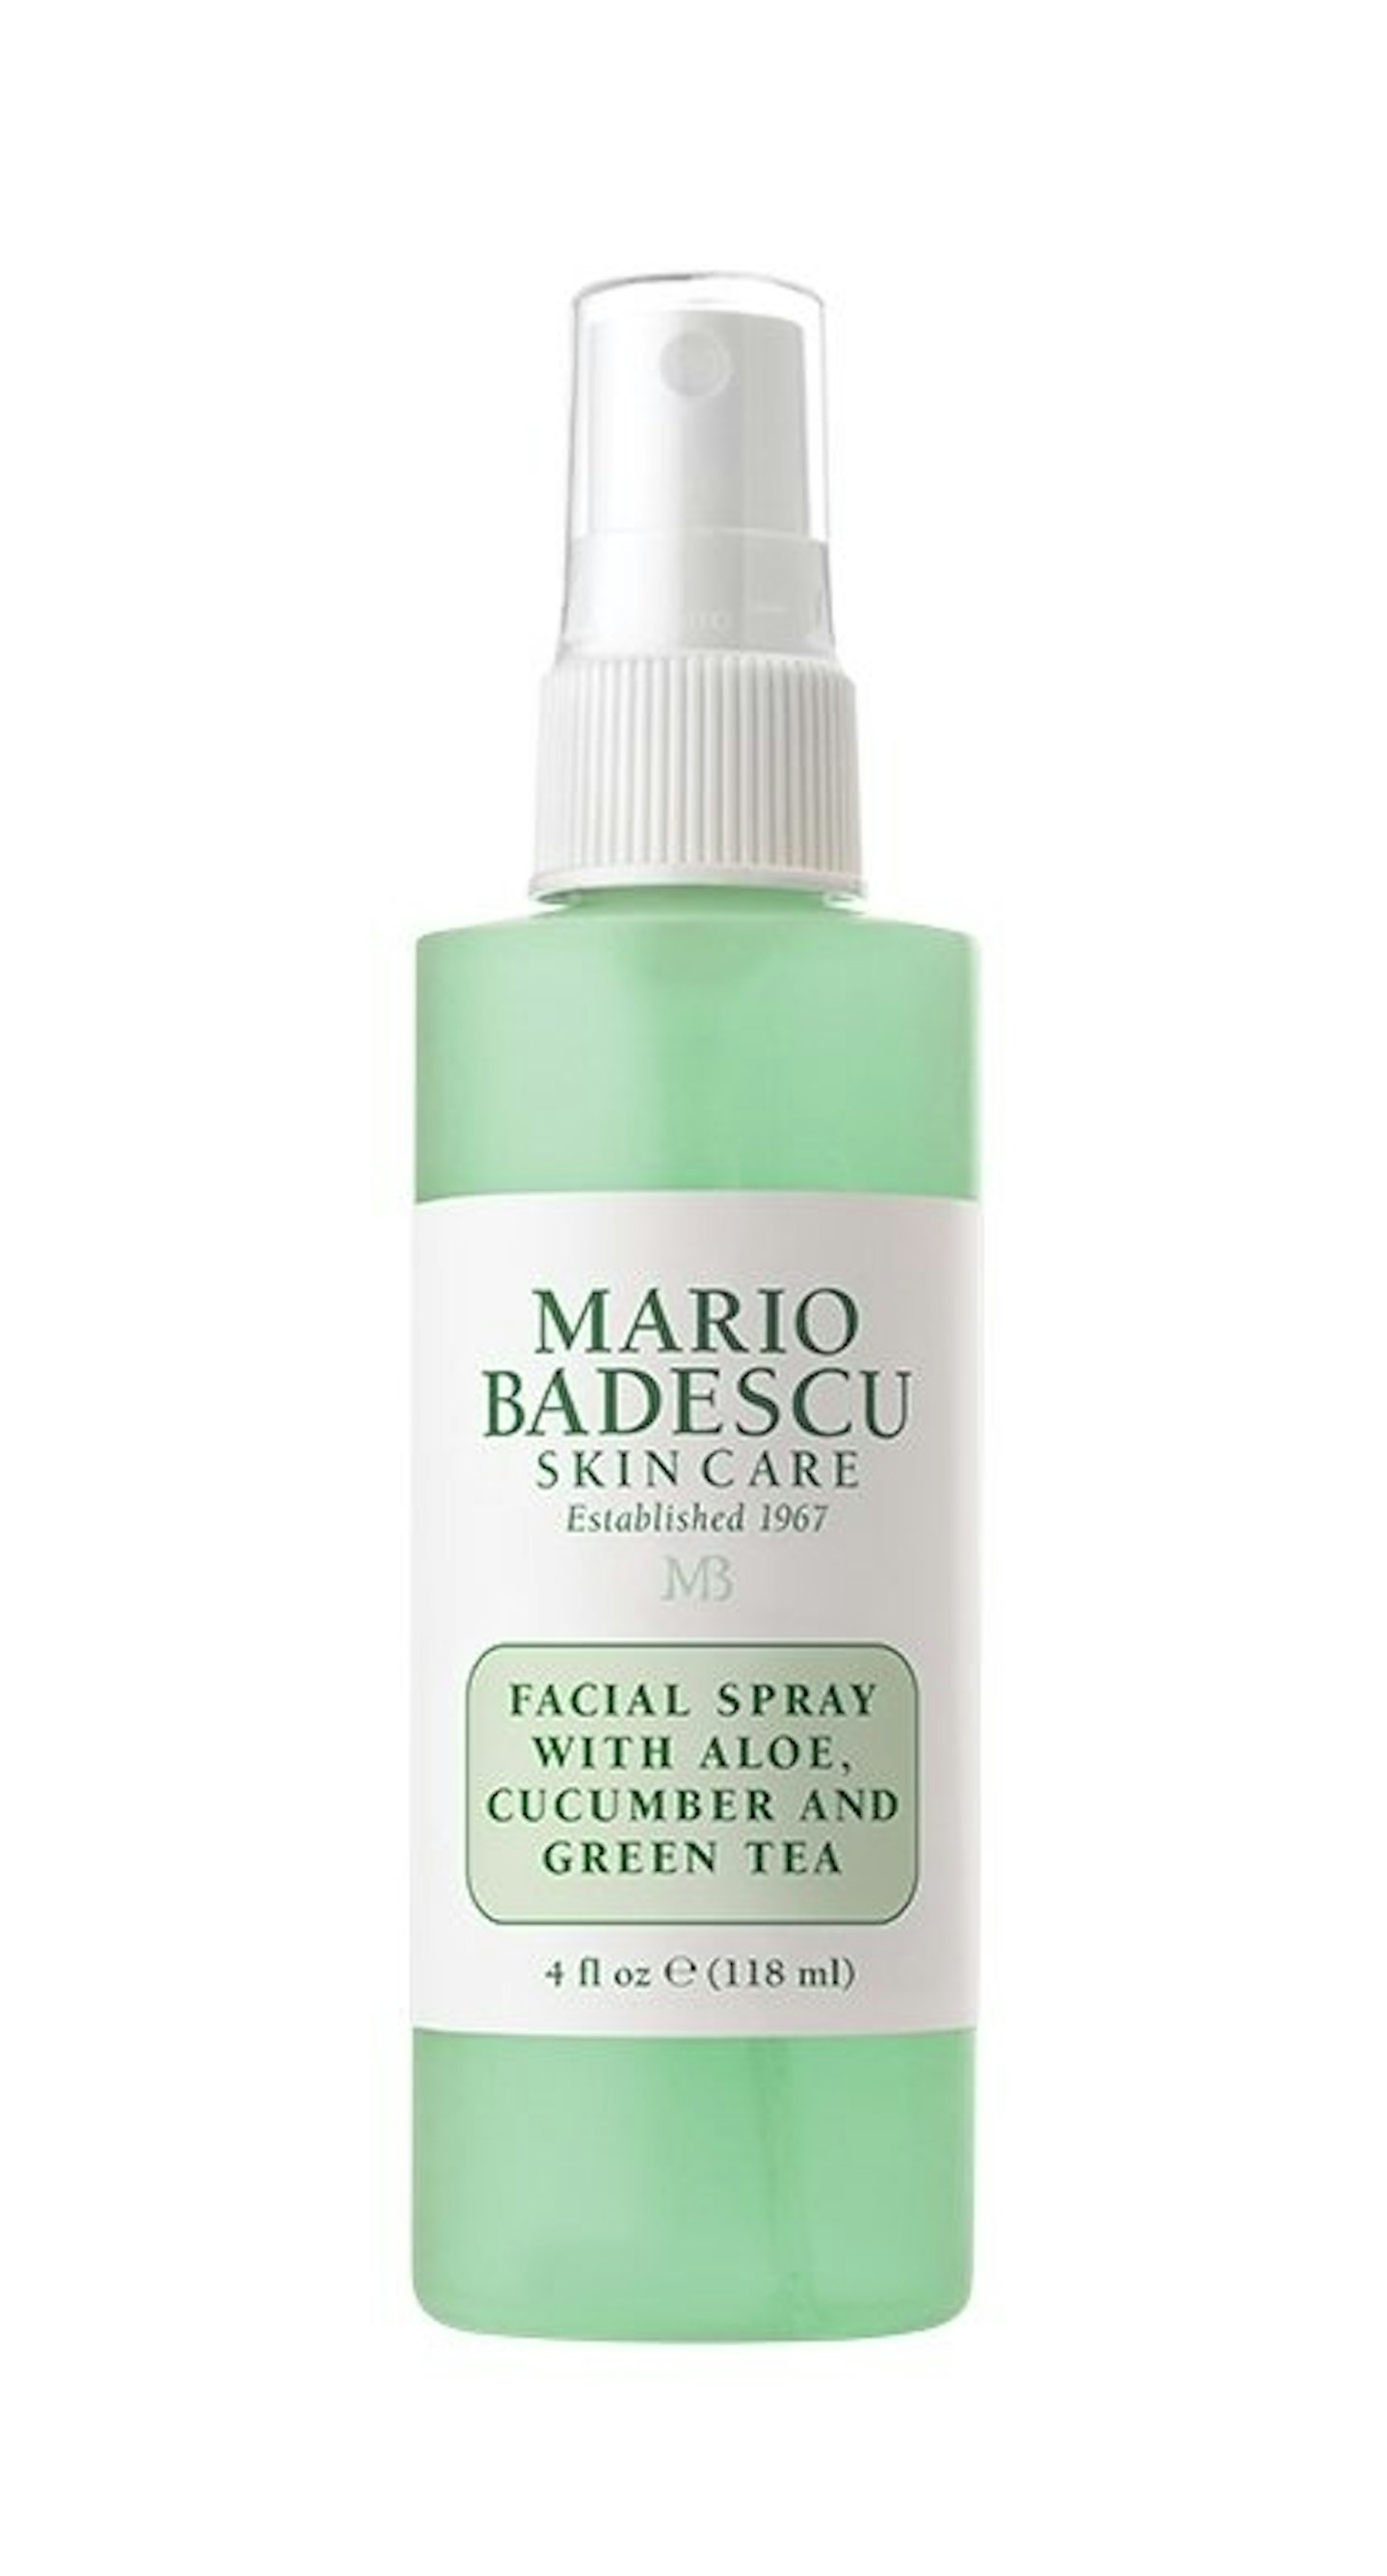 Mario Badescu Aloe and Cucumber Facial Spray, £